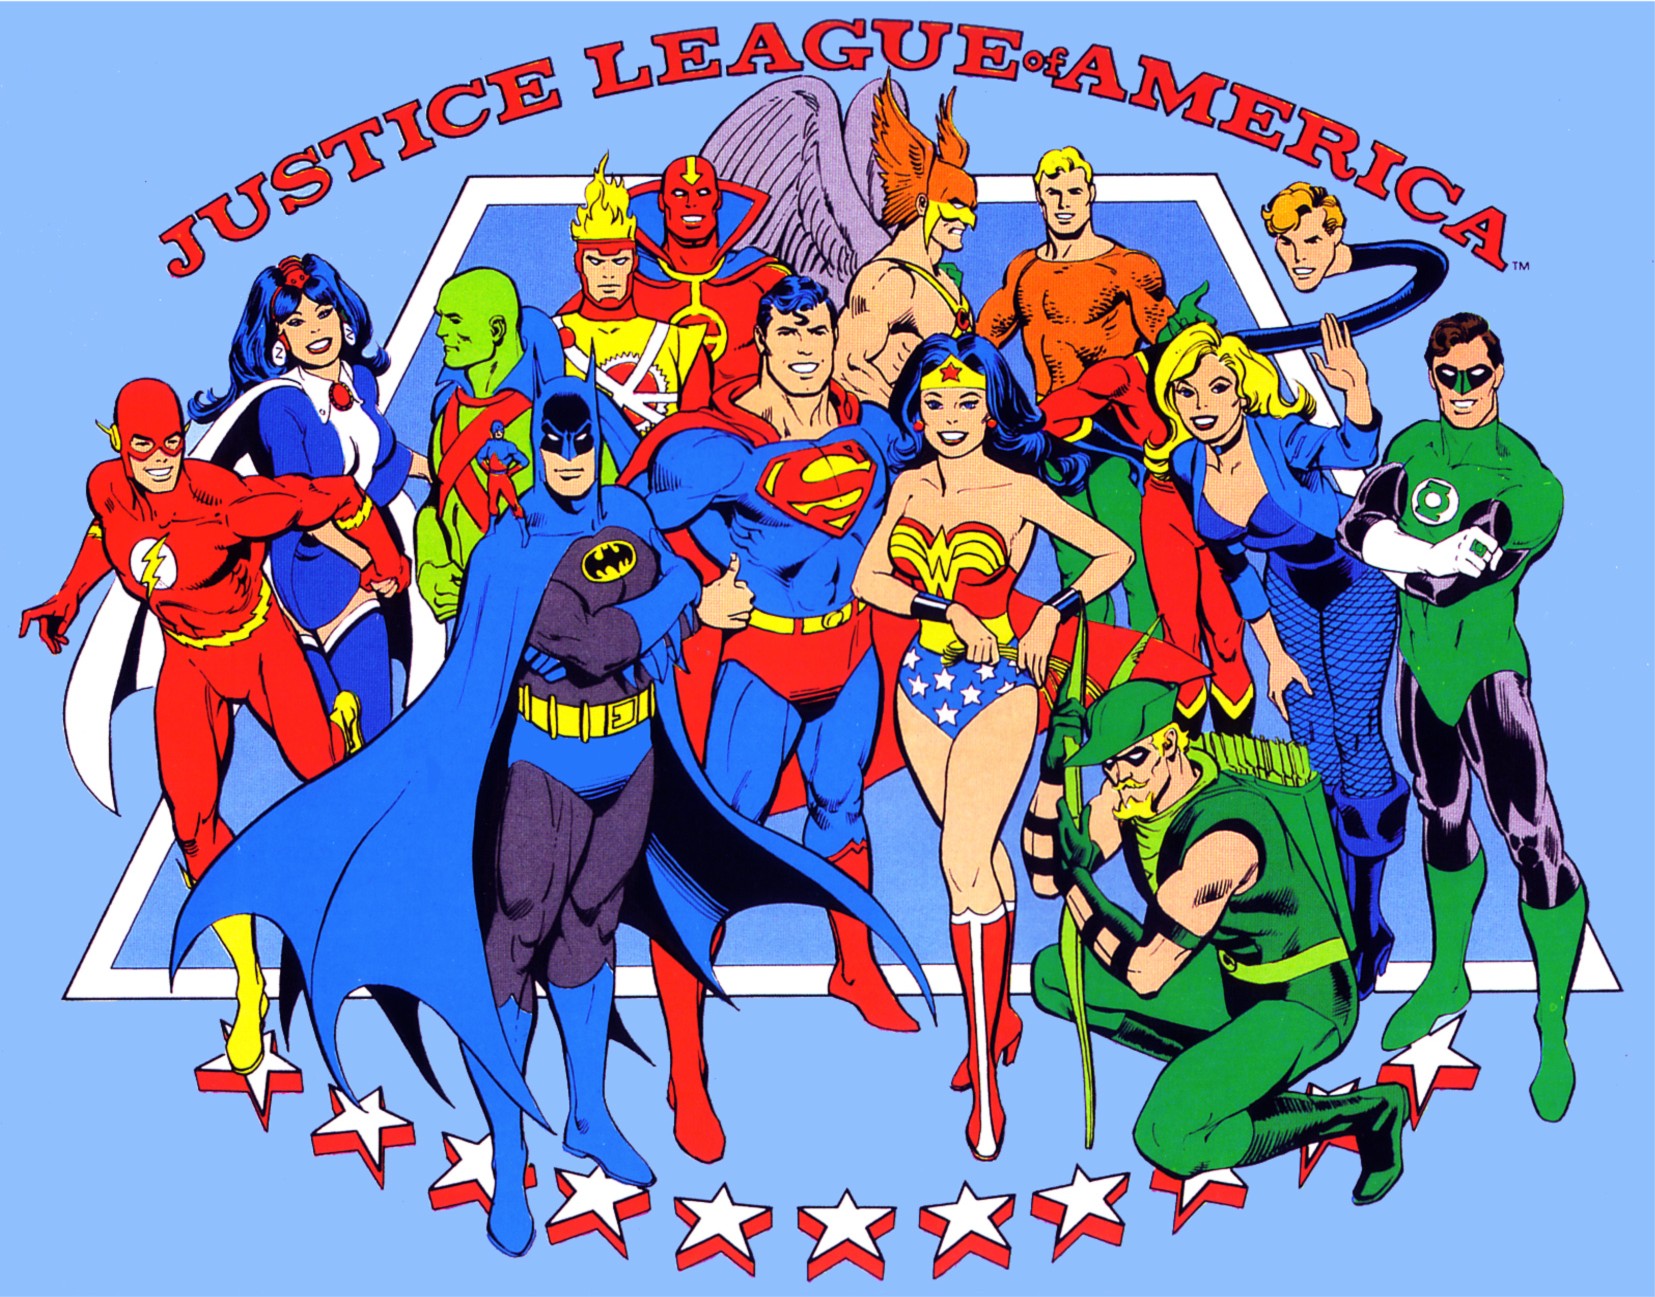 300335 скачать обои комиксы, лига справедливости америки, аквамен, бэтмен, огненный шторм (комиксы dc), флеш, зелёная стрела, зелёный фонарь, хэл джордан, человек ястреб (dc comics), марсианский охотник, супермен, чудо женщина, затанна, лига справедливости - заставки и картинки бесплатно